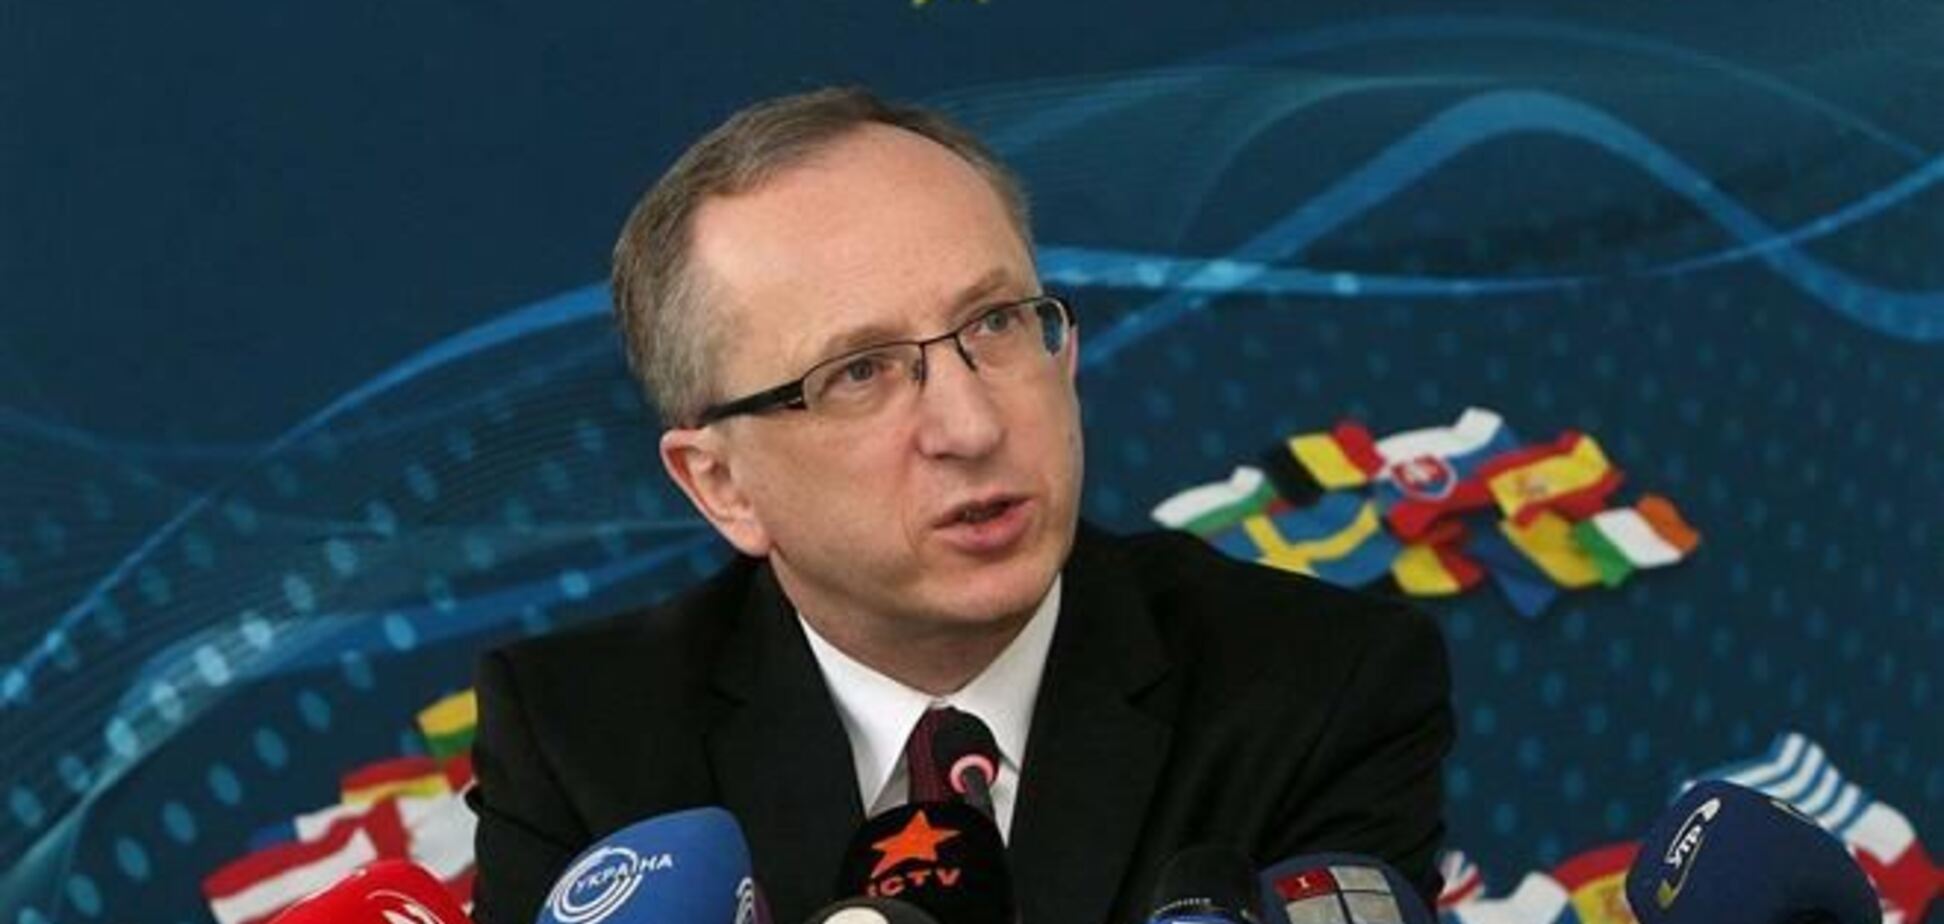 Томбински напомнил украинской власти, что применение силы неприемлемо